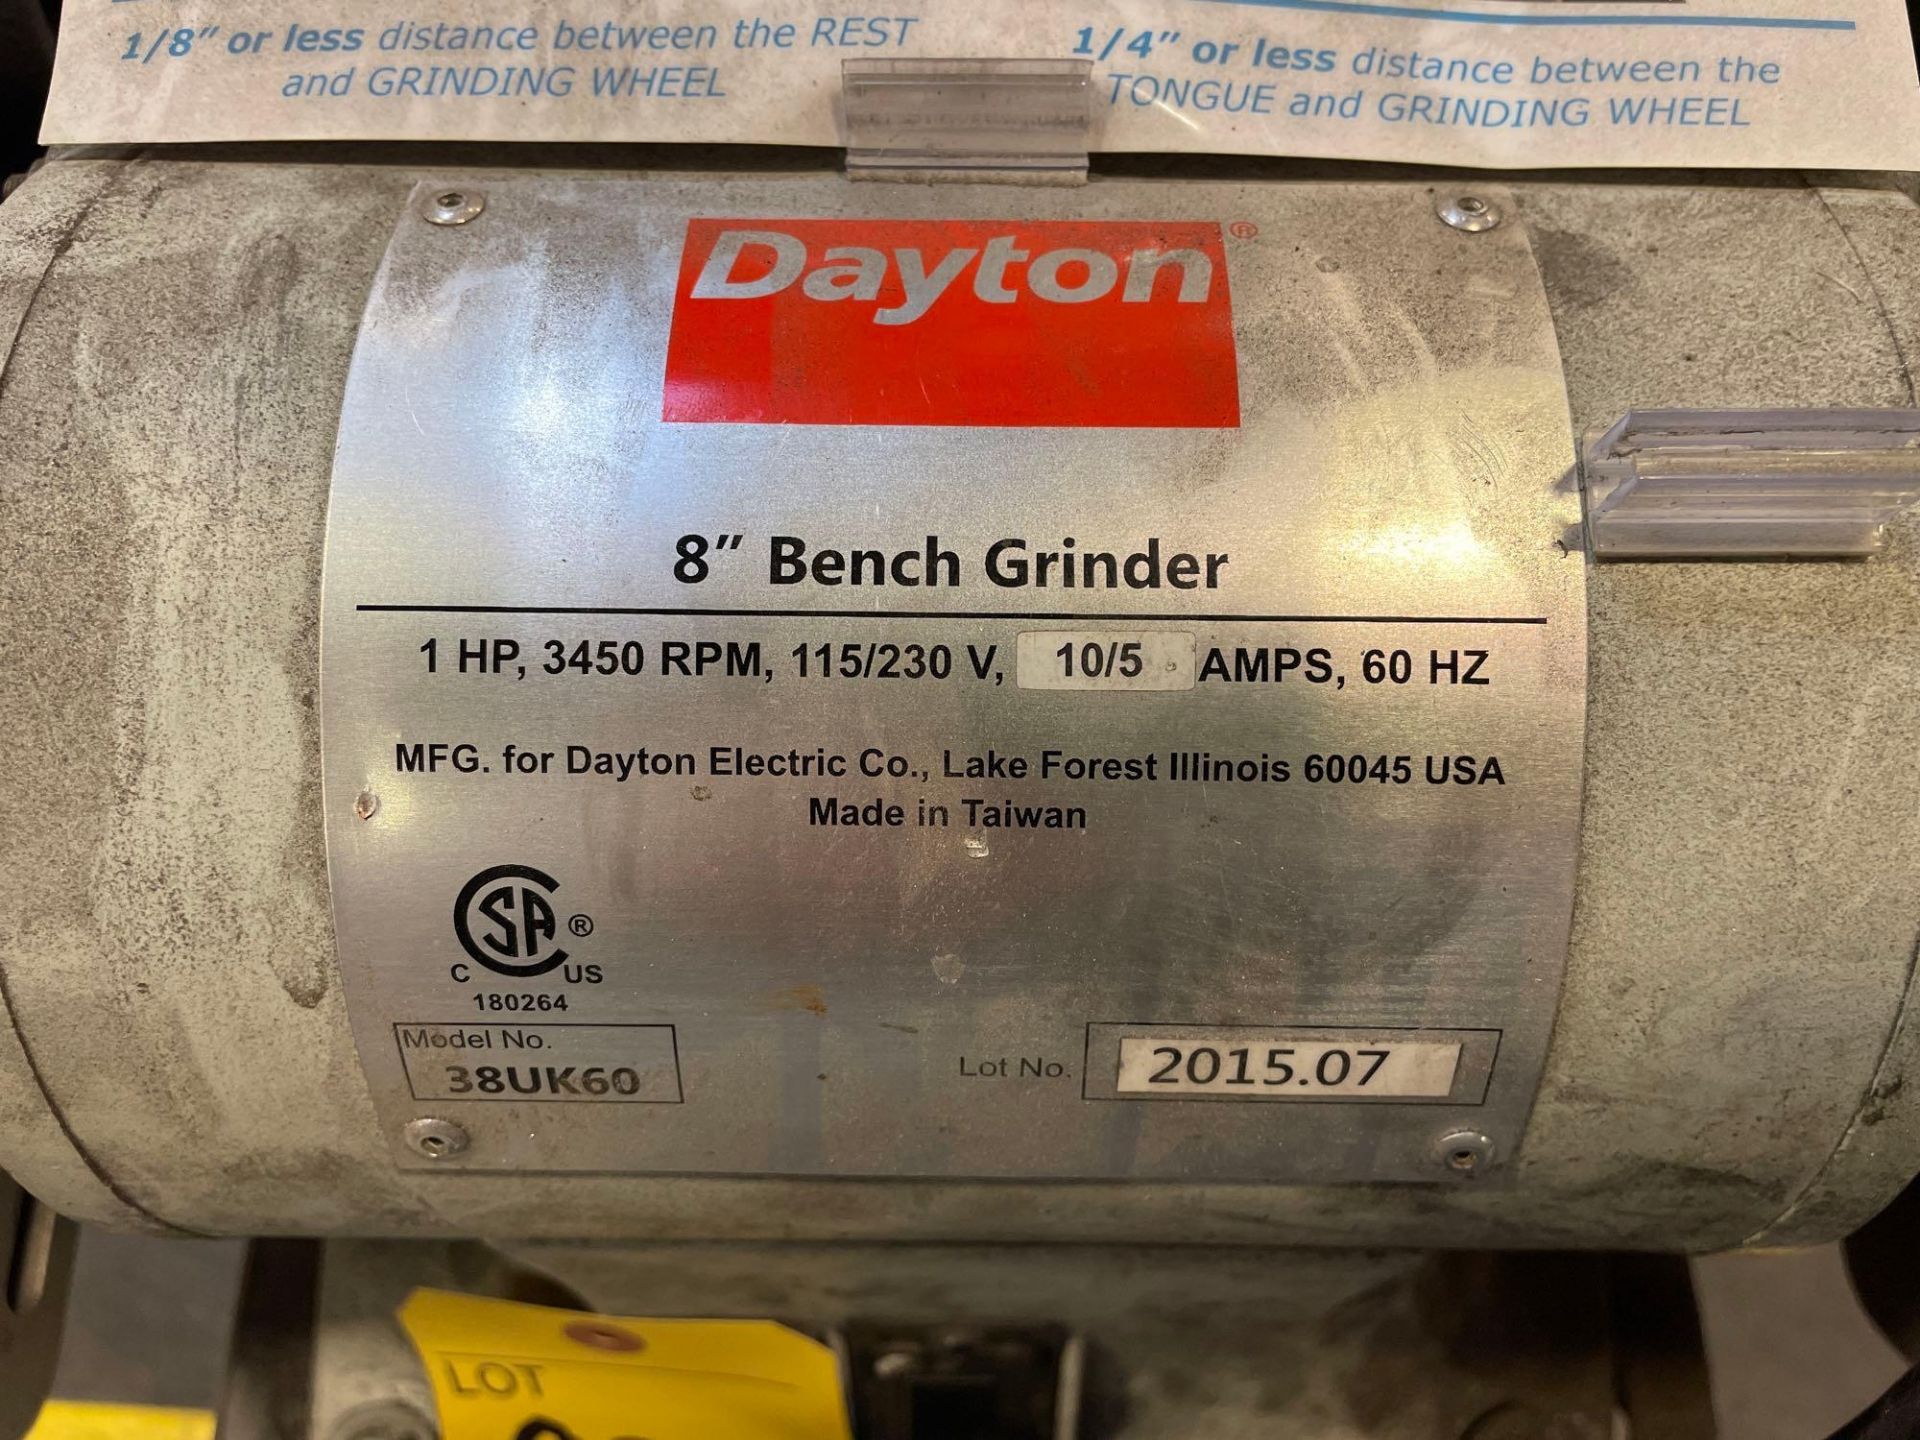 Dayton 8" Double End Bench Grinder, Model 38UK60 - Image 2 of 5